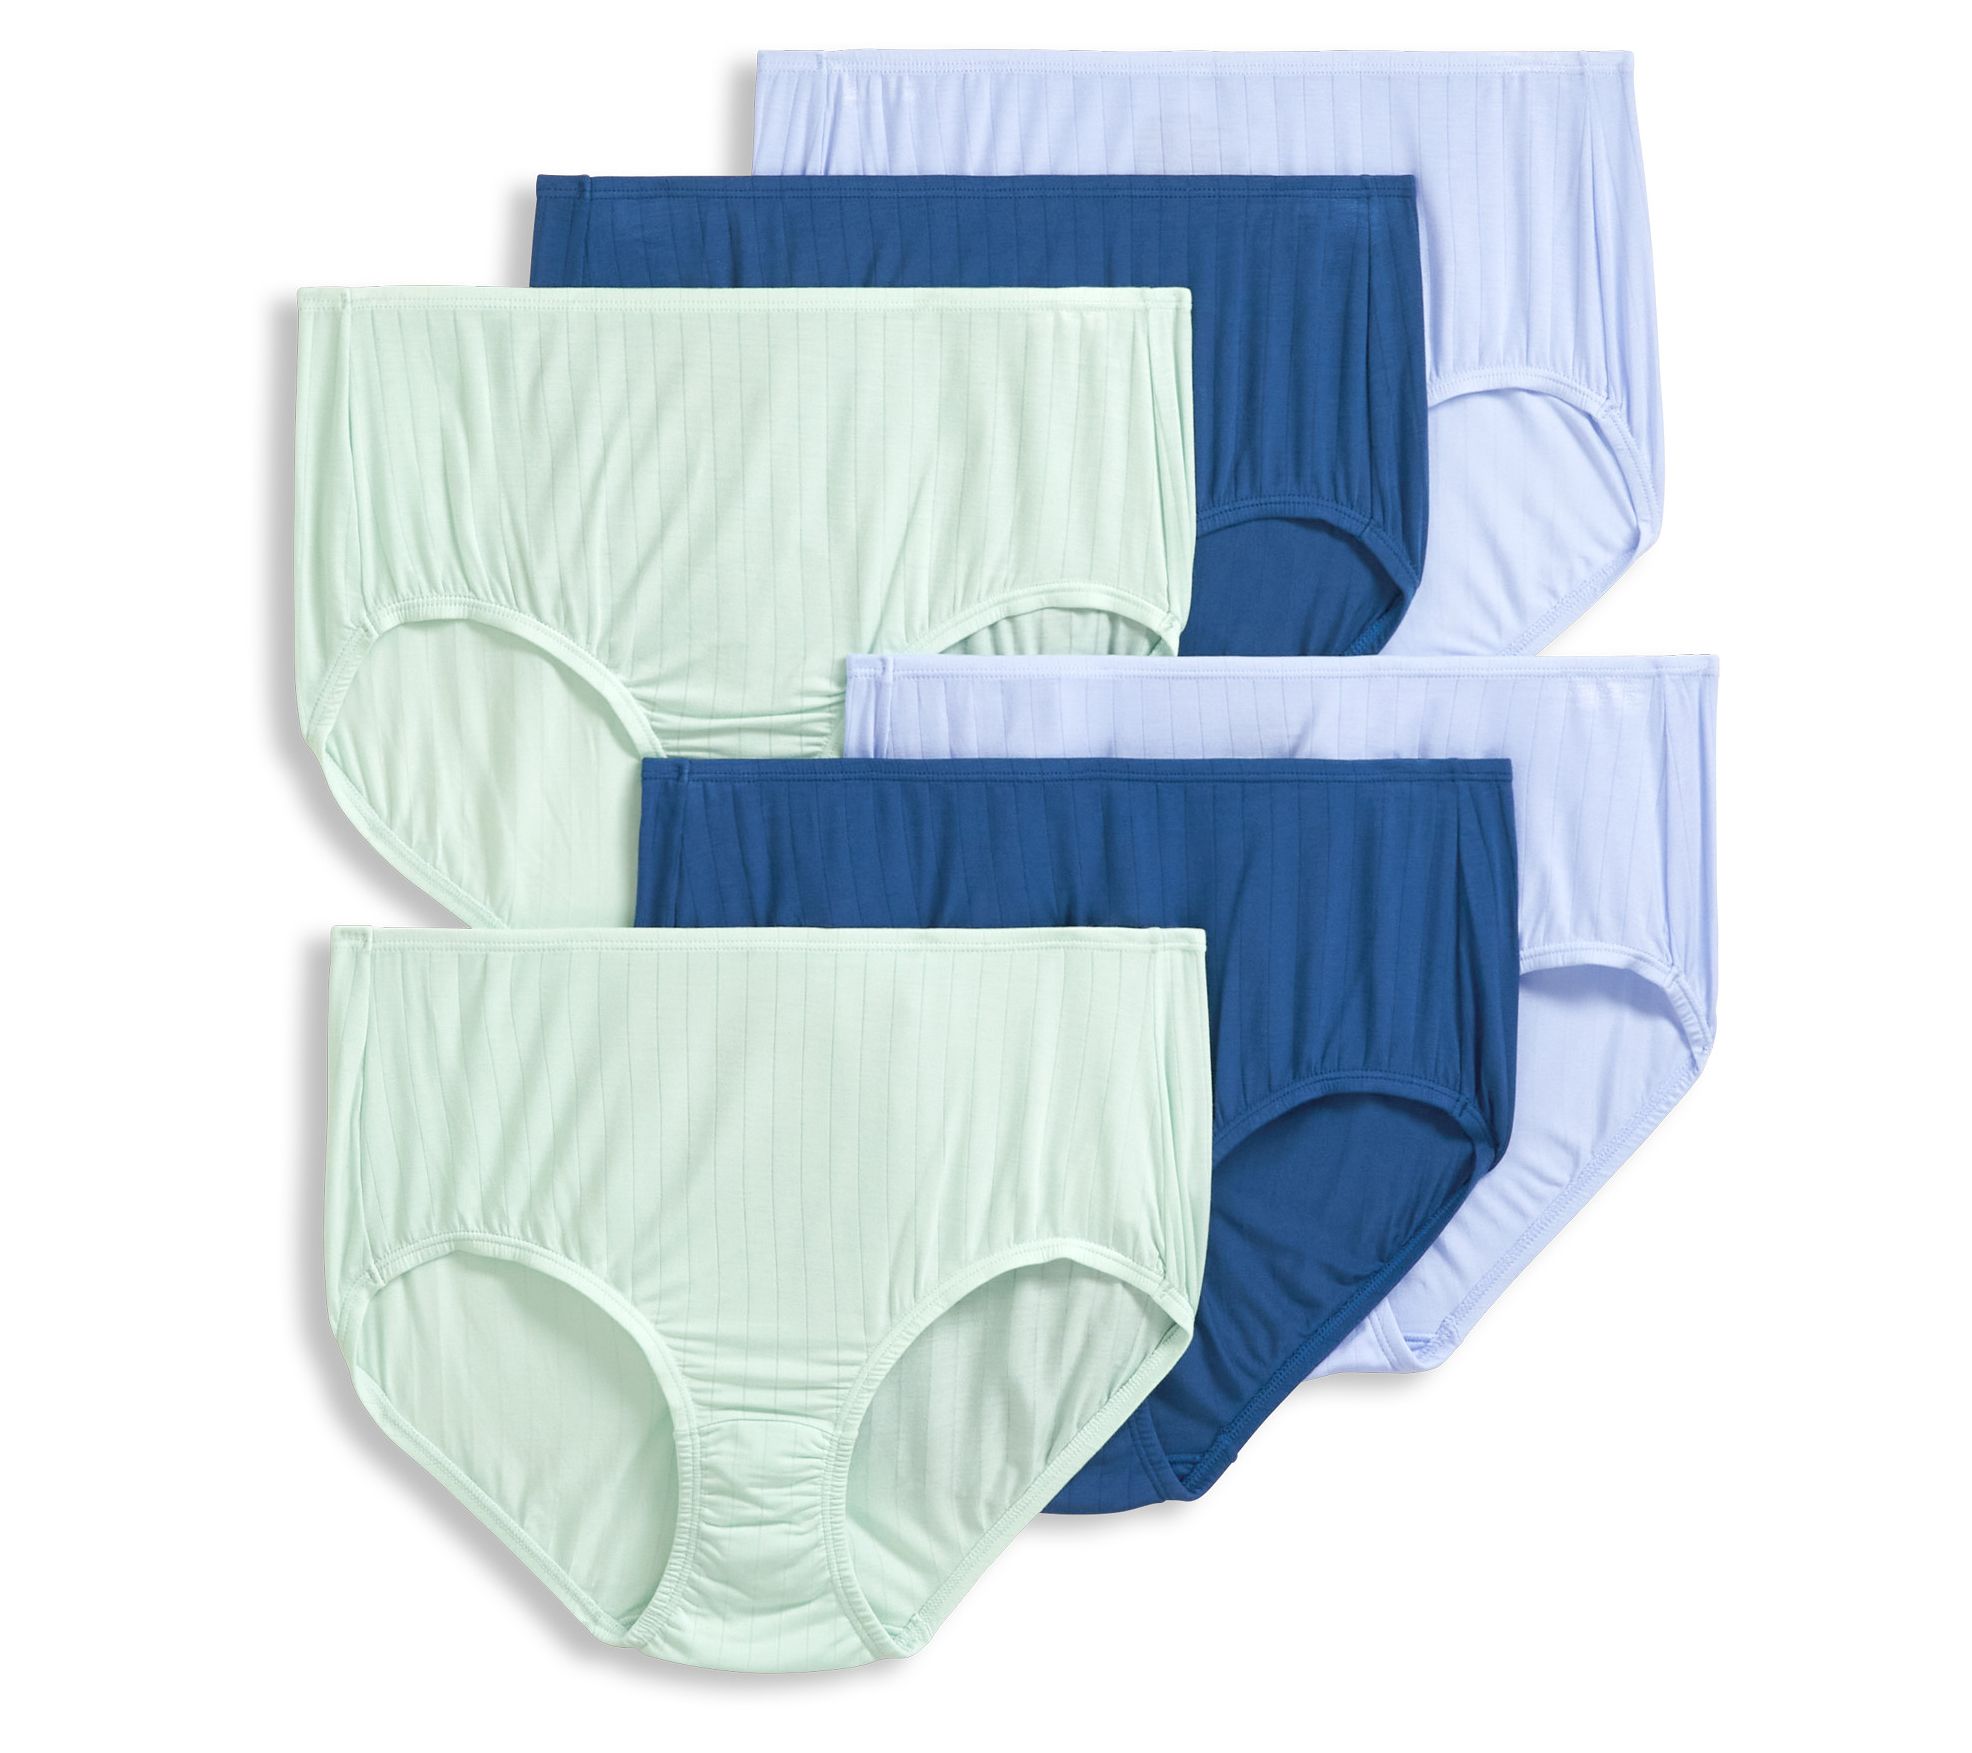 Women's Underwear Size 5 - Intimates 